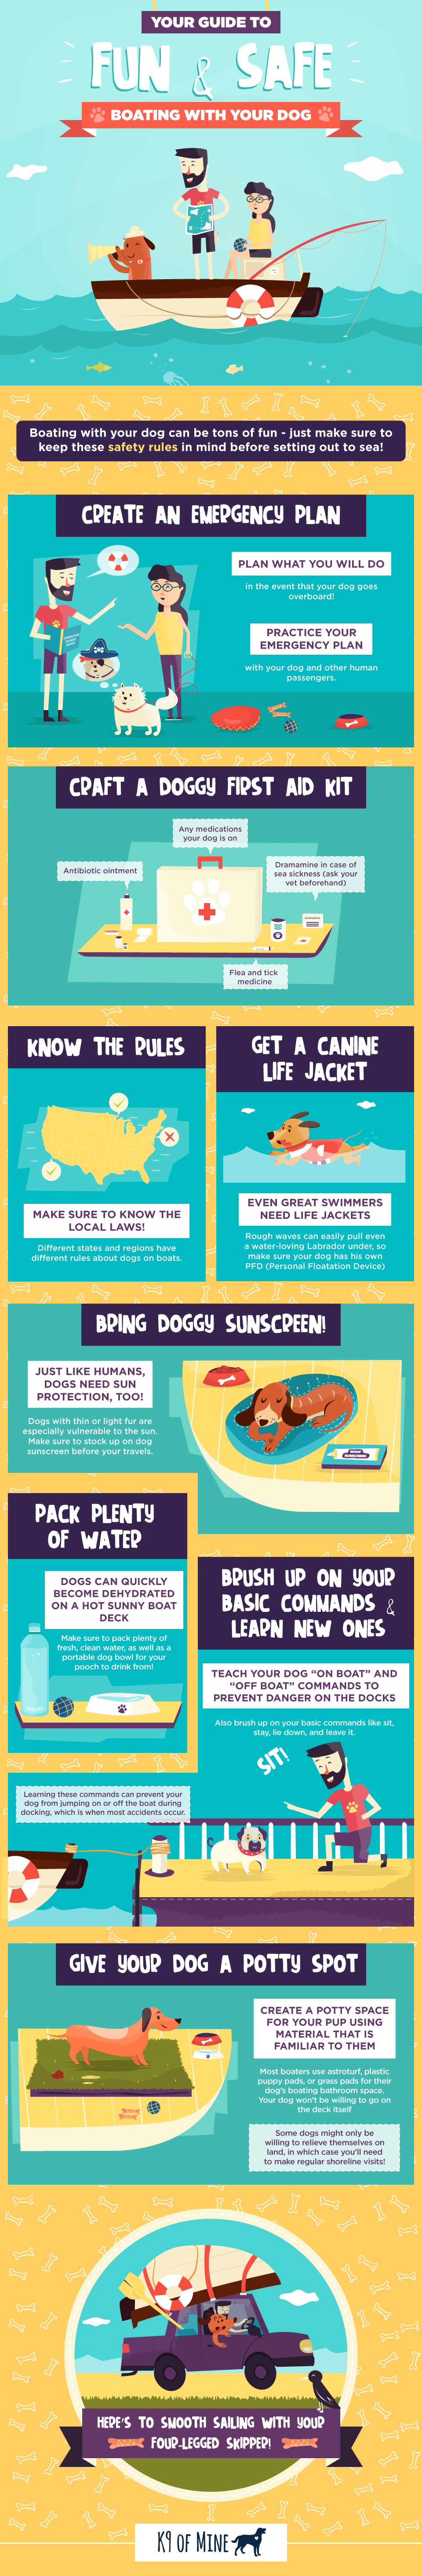 Советы по безопасности при катании на собаках на лодке: что нужно знать перед тем, как отправиться в море [инфографика]